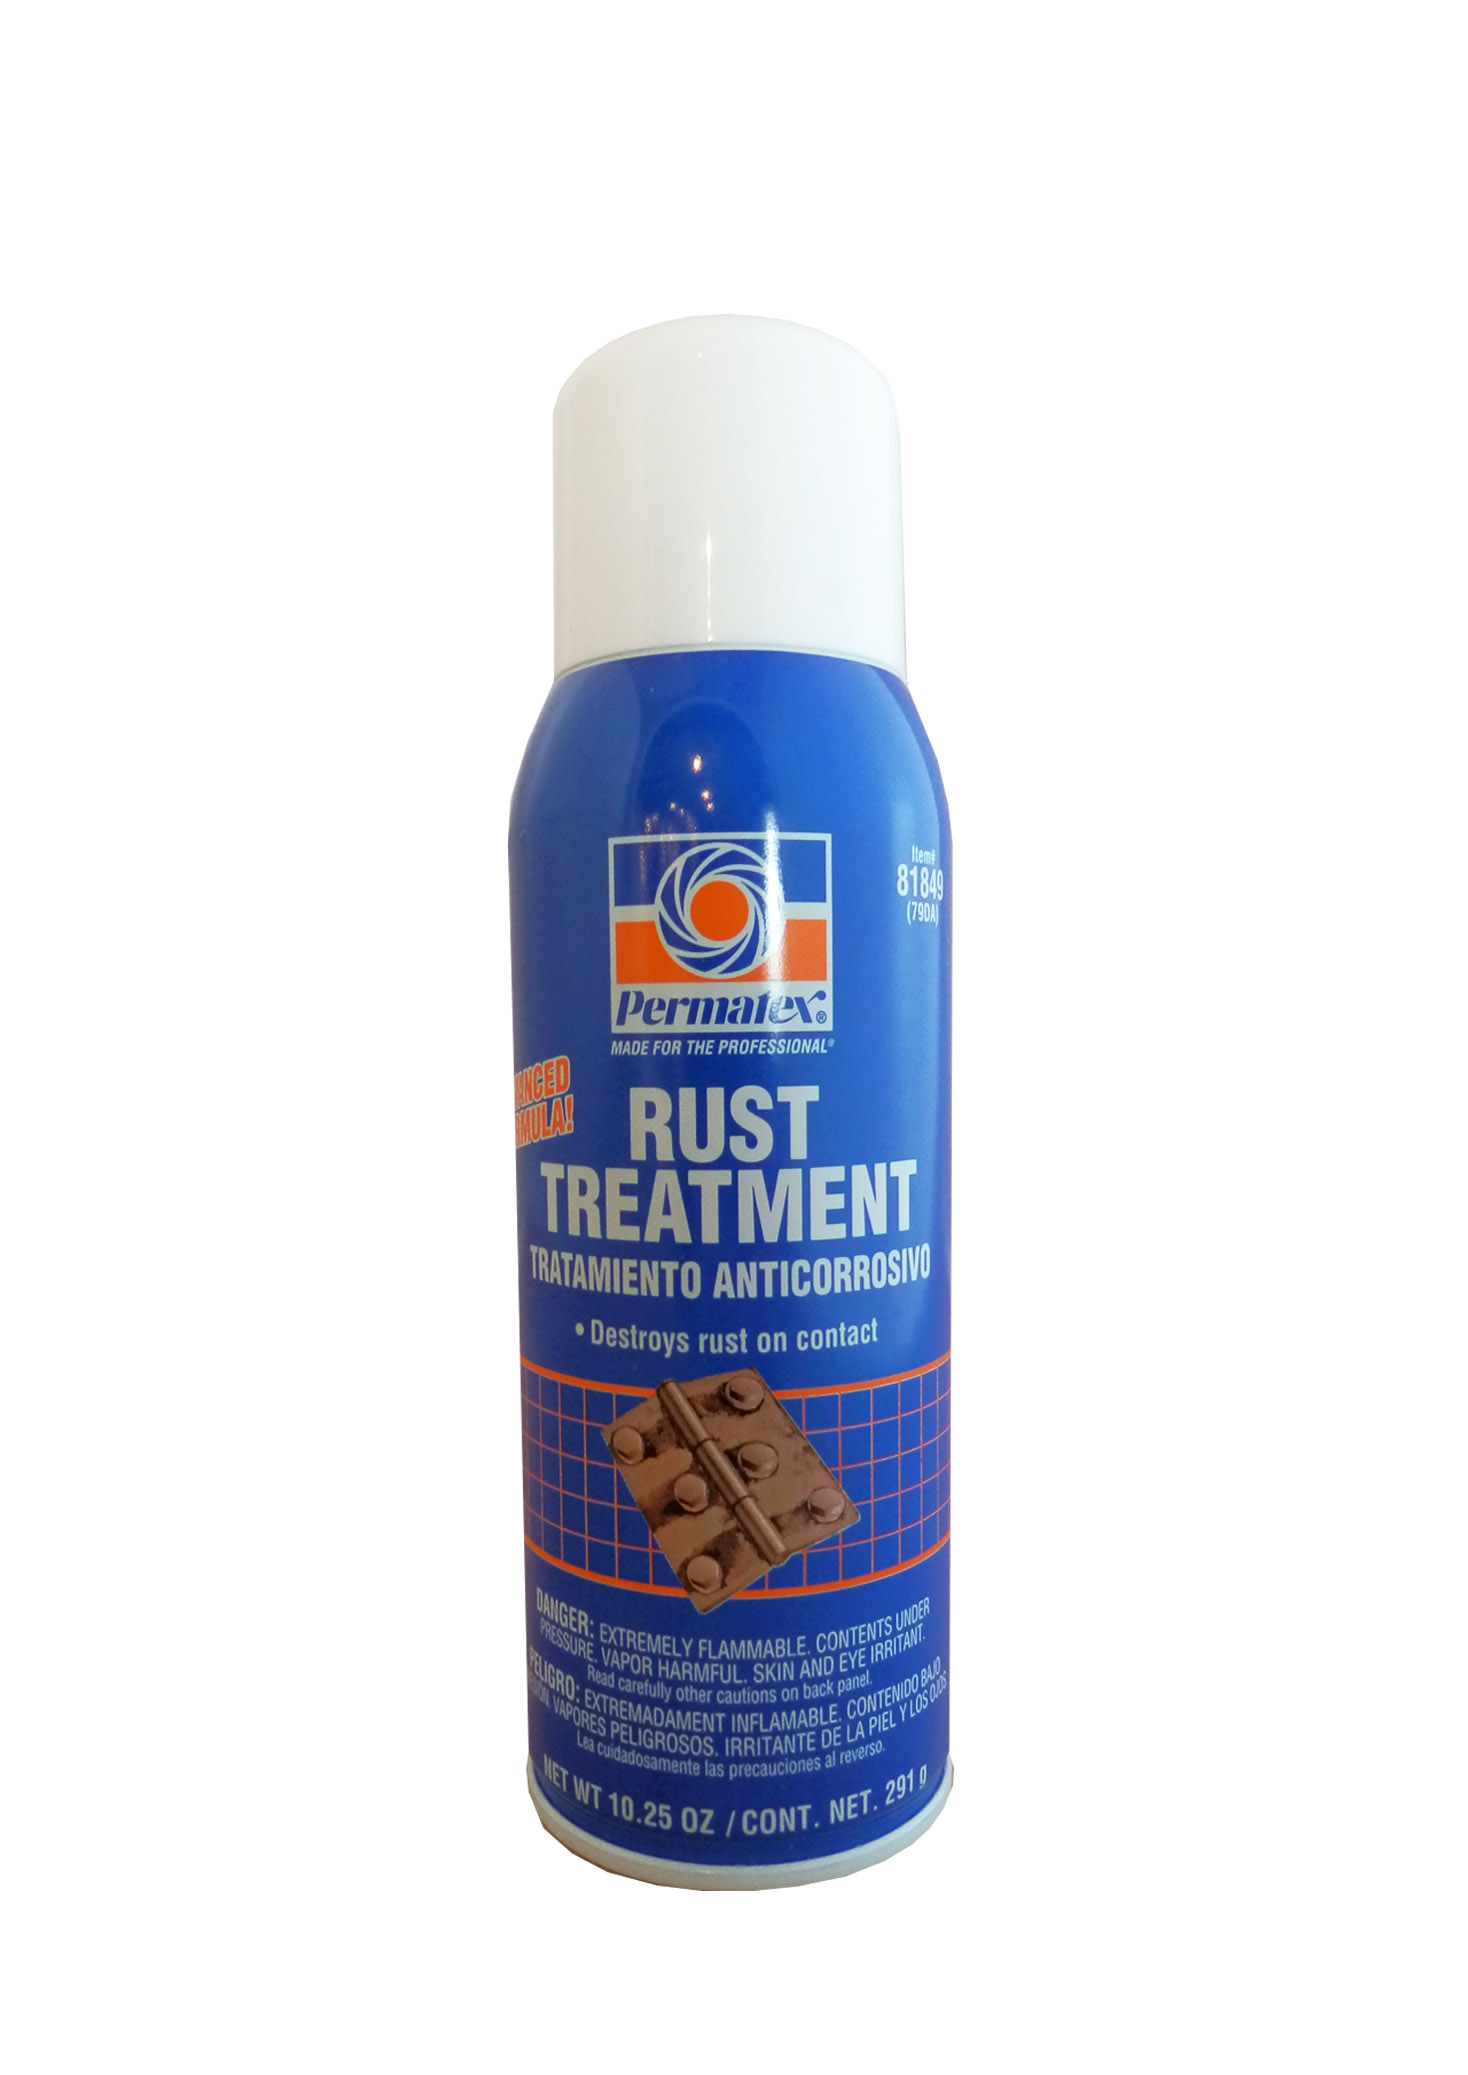 Rust treatment 81775 инструкция по применению фото 107